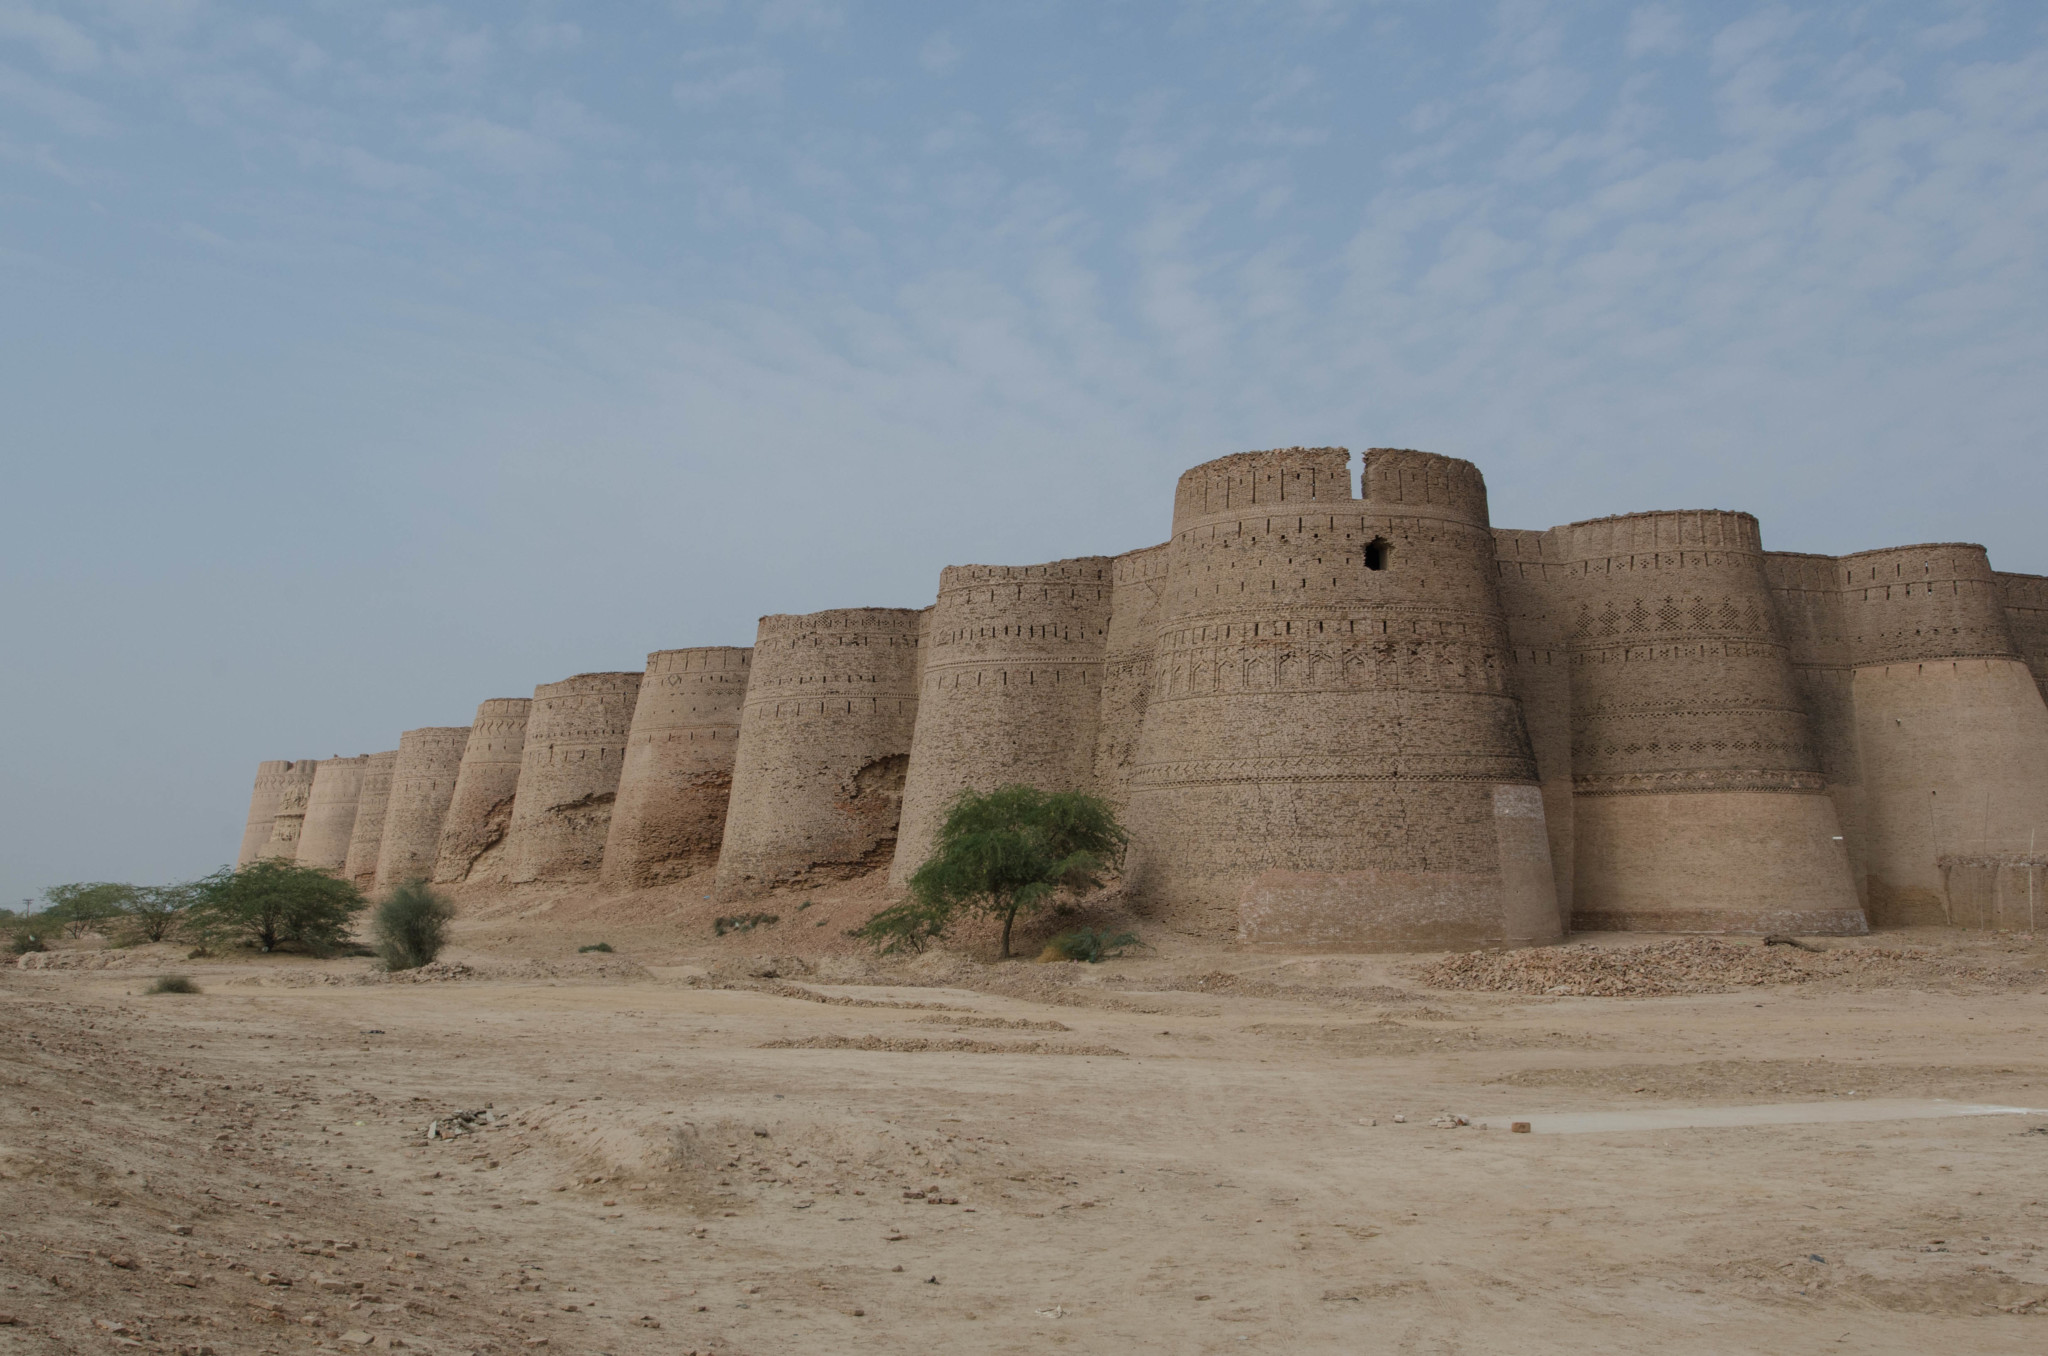 Das Derawar Fort in der Cholistan Wüste